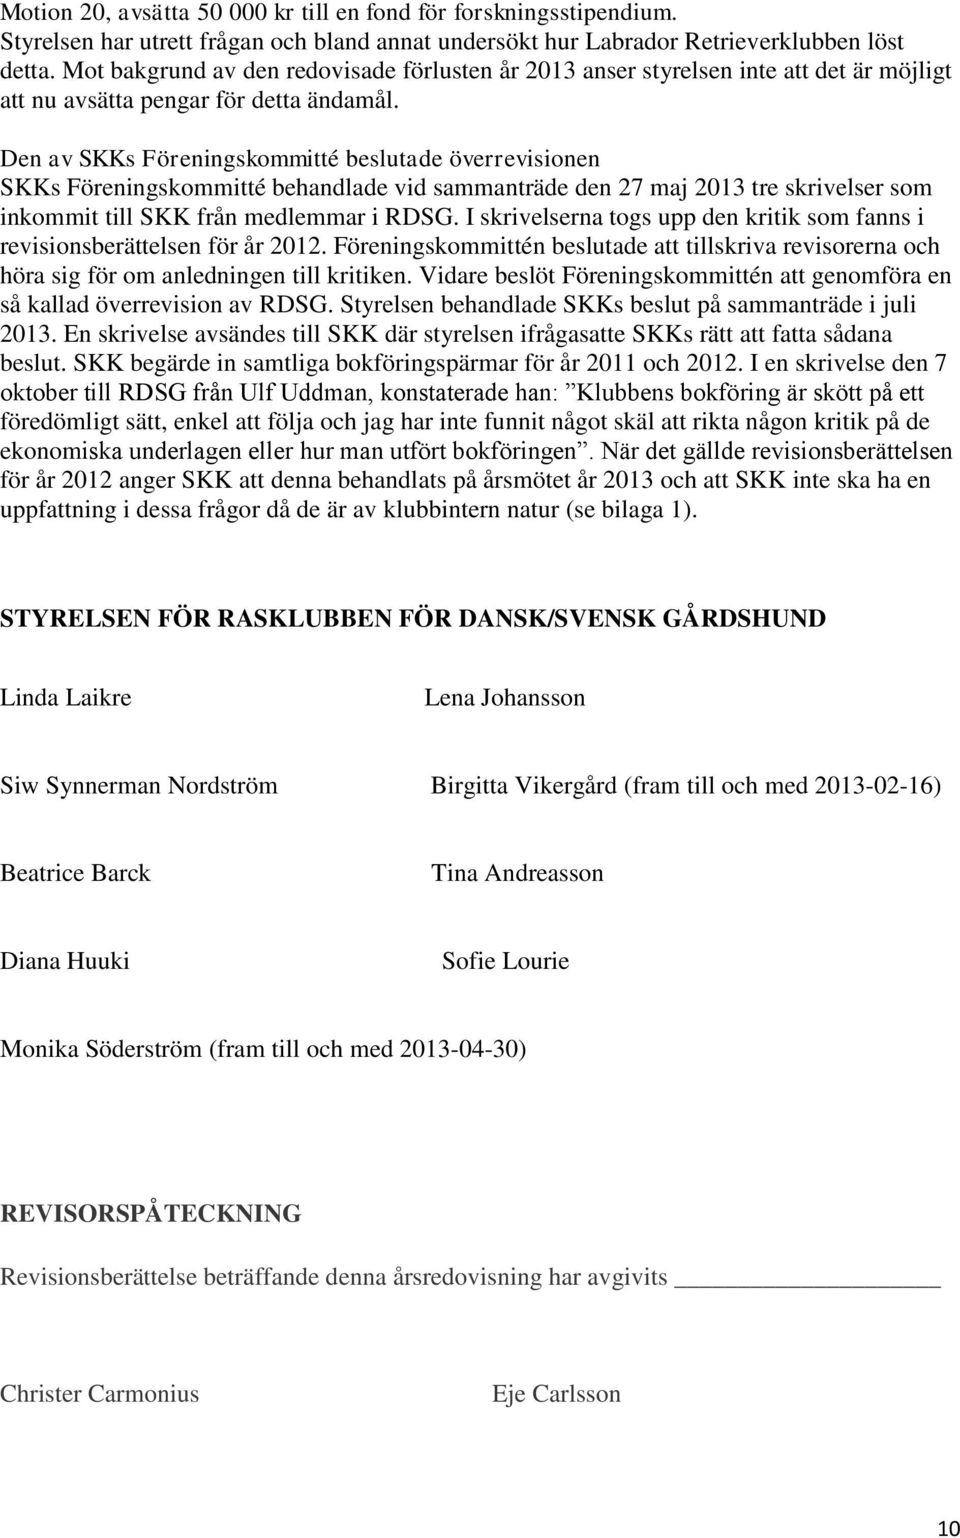 Den av SKKs Föreningskommitté beslutade överrevisionen SKKs Föreningskommitté behandlade vid sammanträde den 27 maj 2013 tre skrivelser som inkommit till SKK från medlemmar i RDSG.